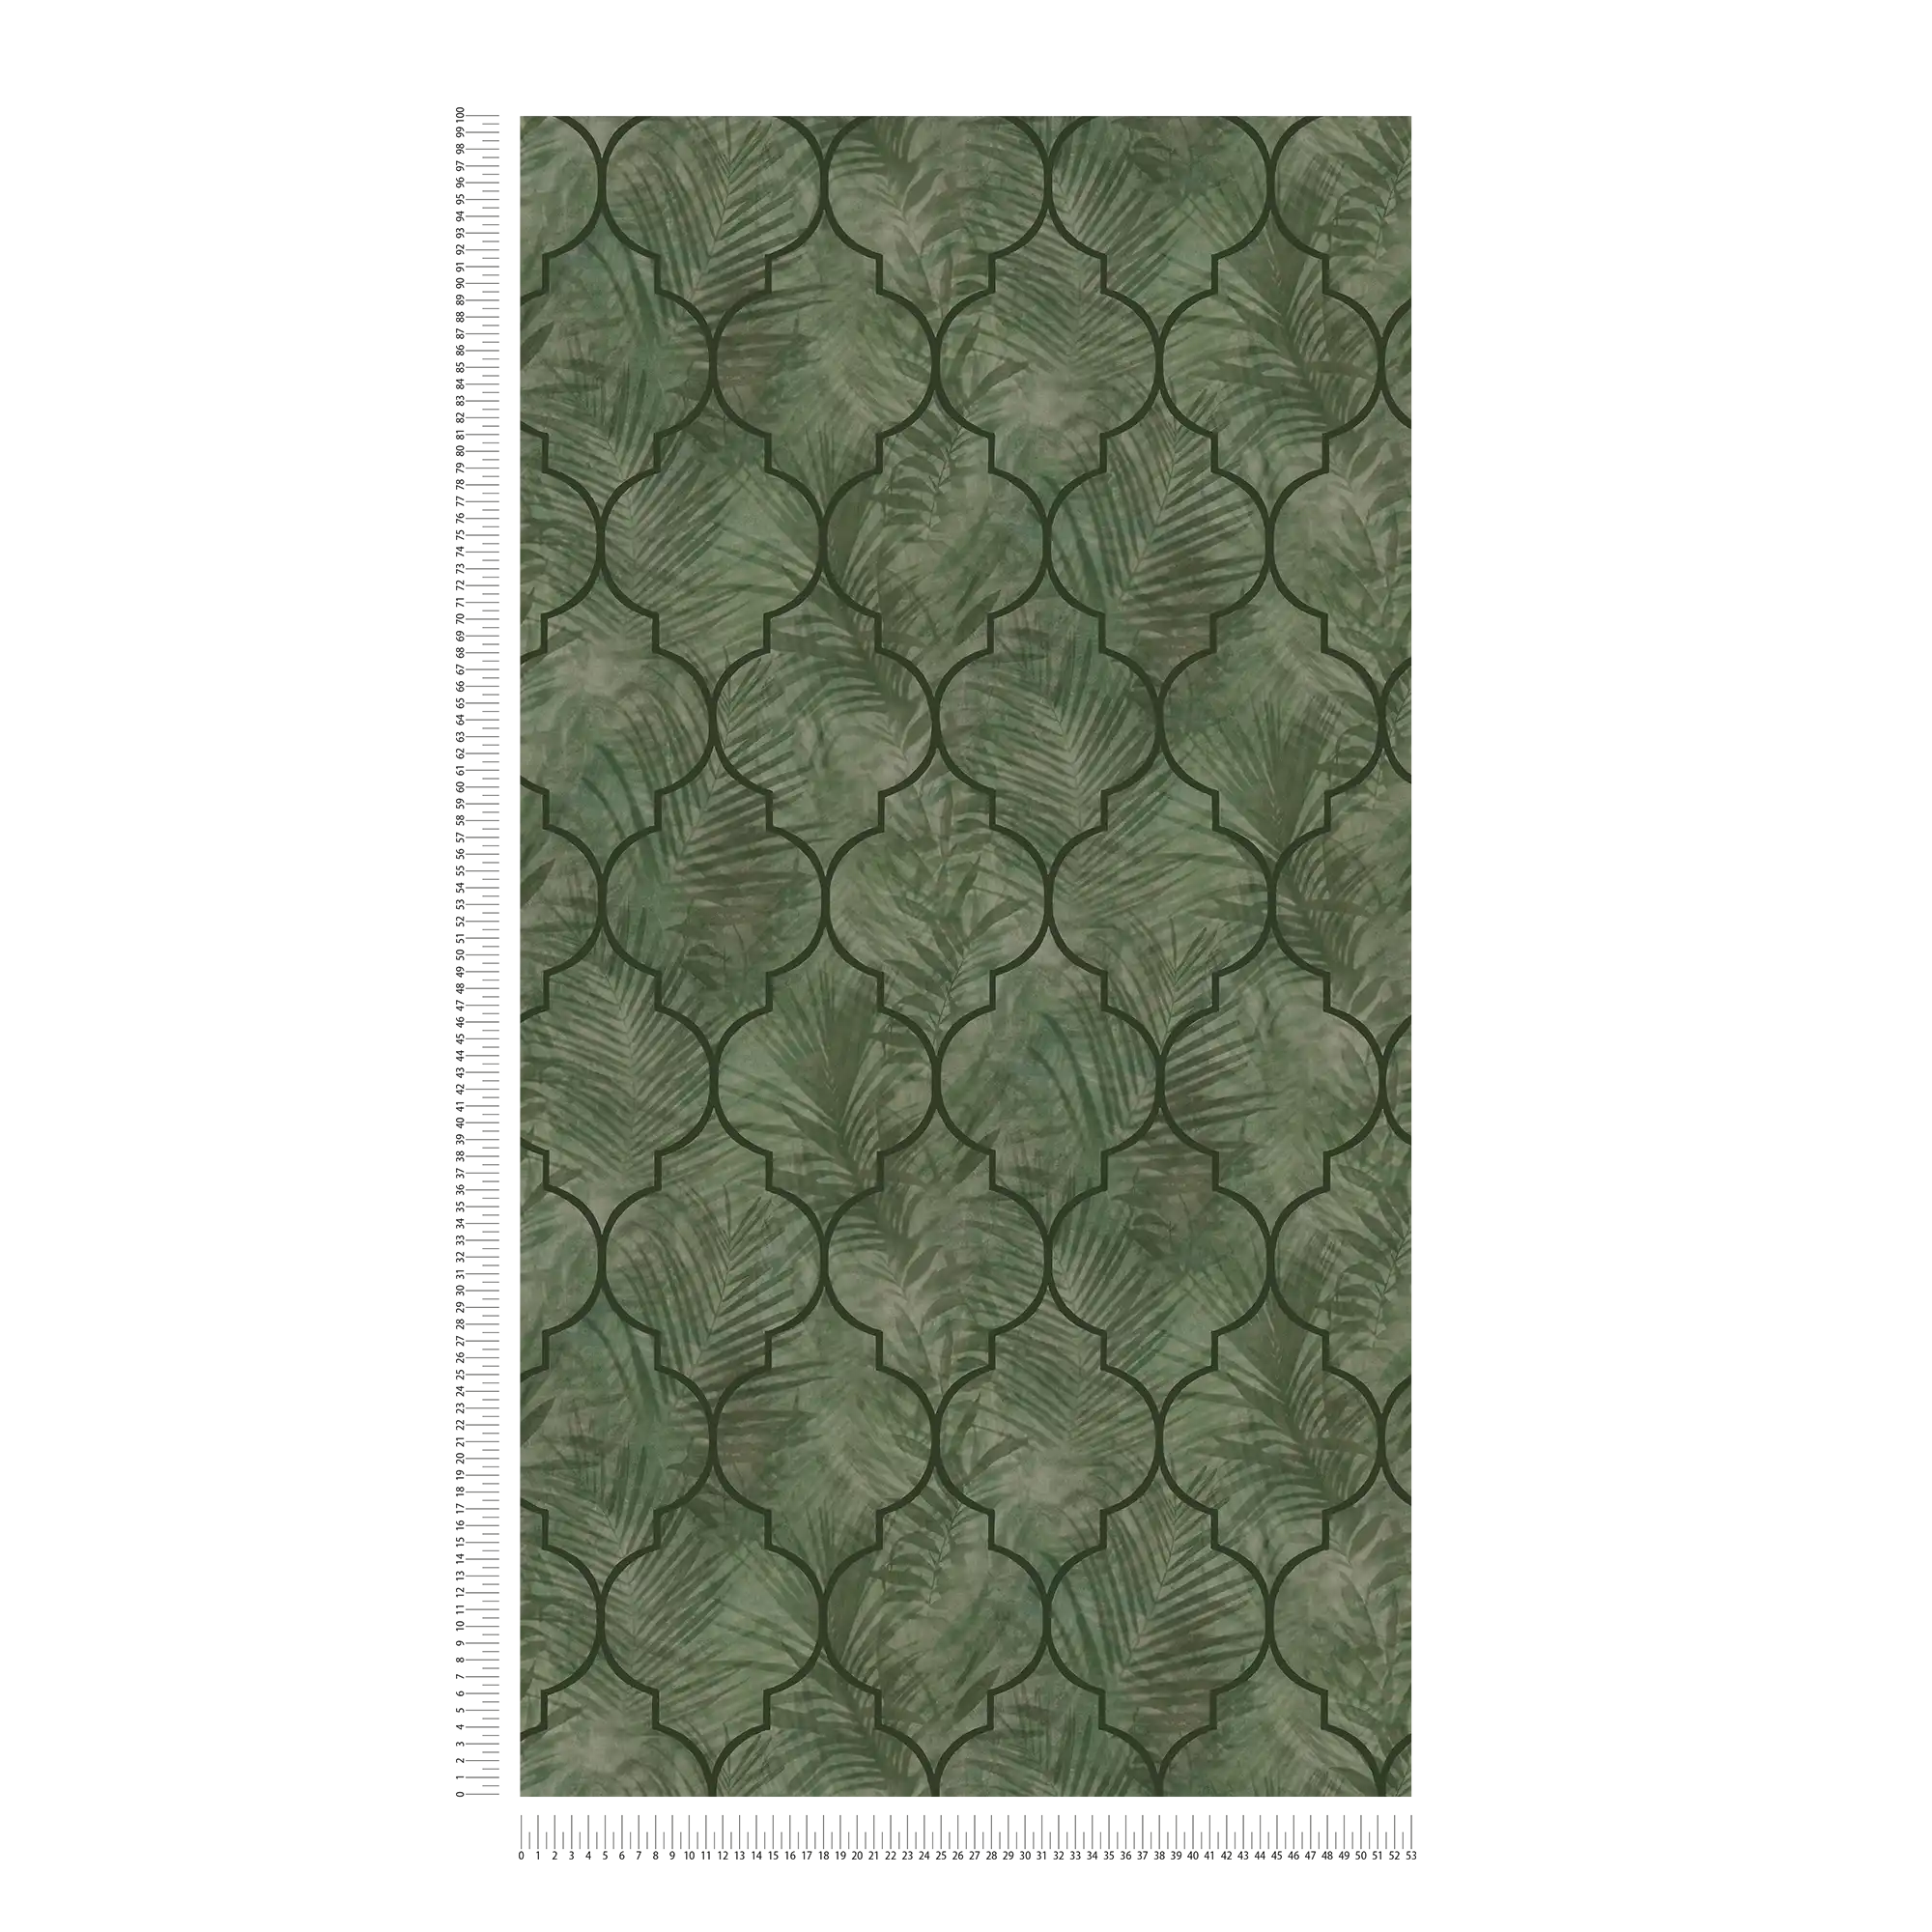             papier peint en papier intissé avec motif de feuilles sur carrelage - vert
        